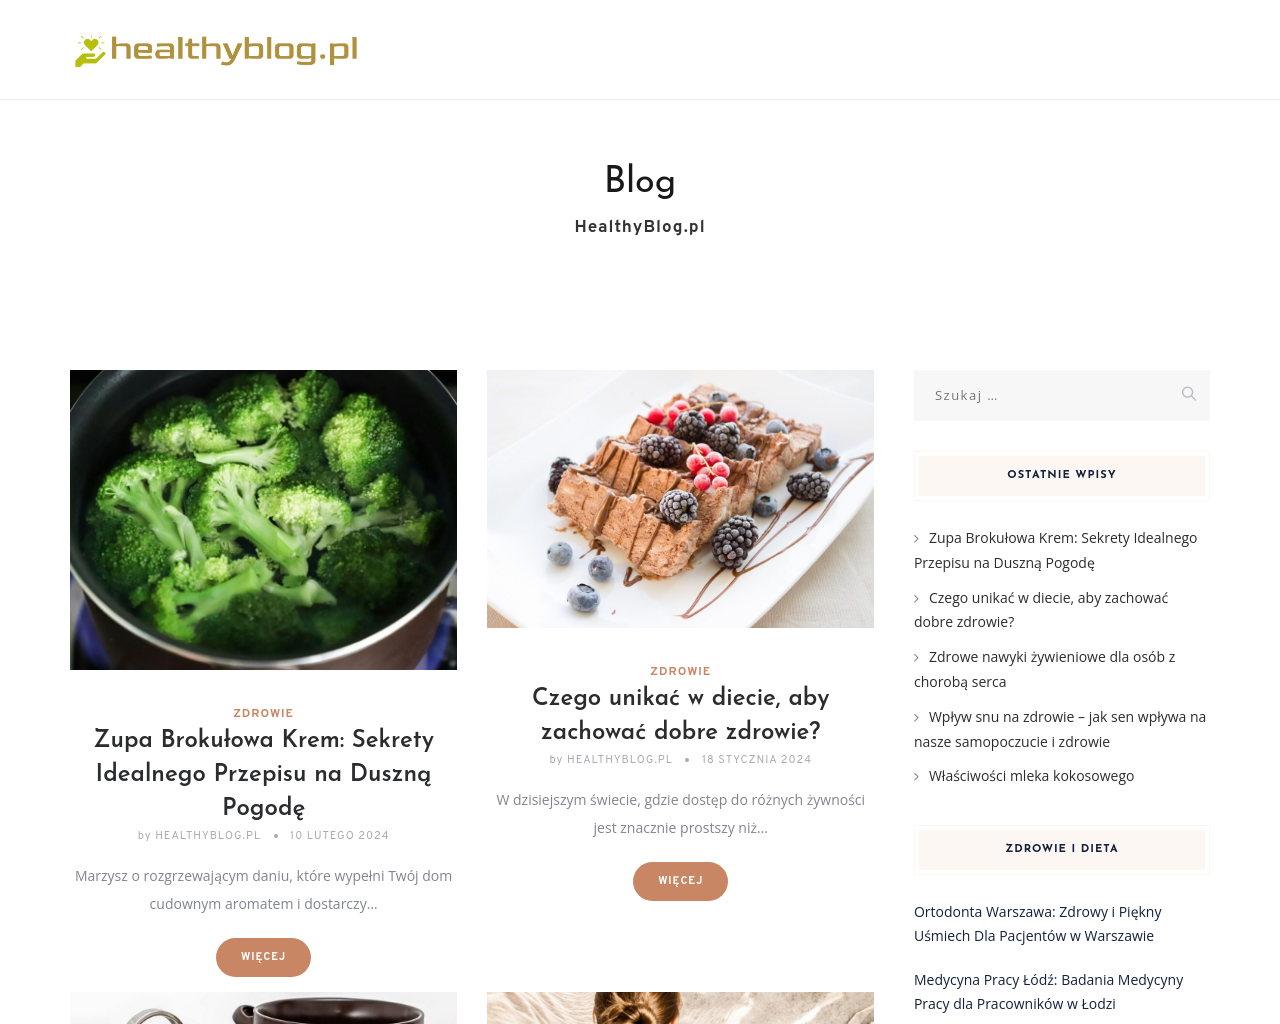 healthyblog.pl